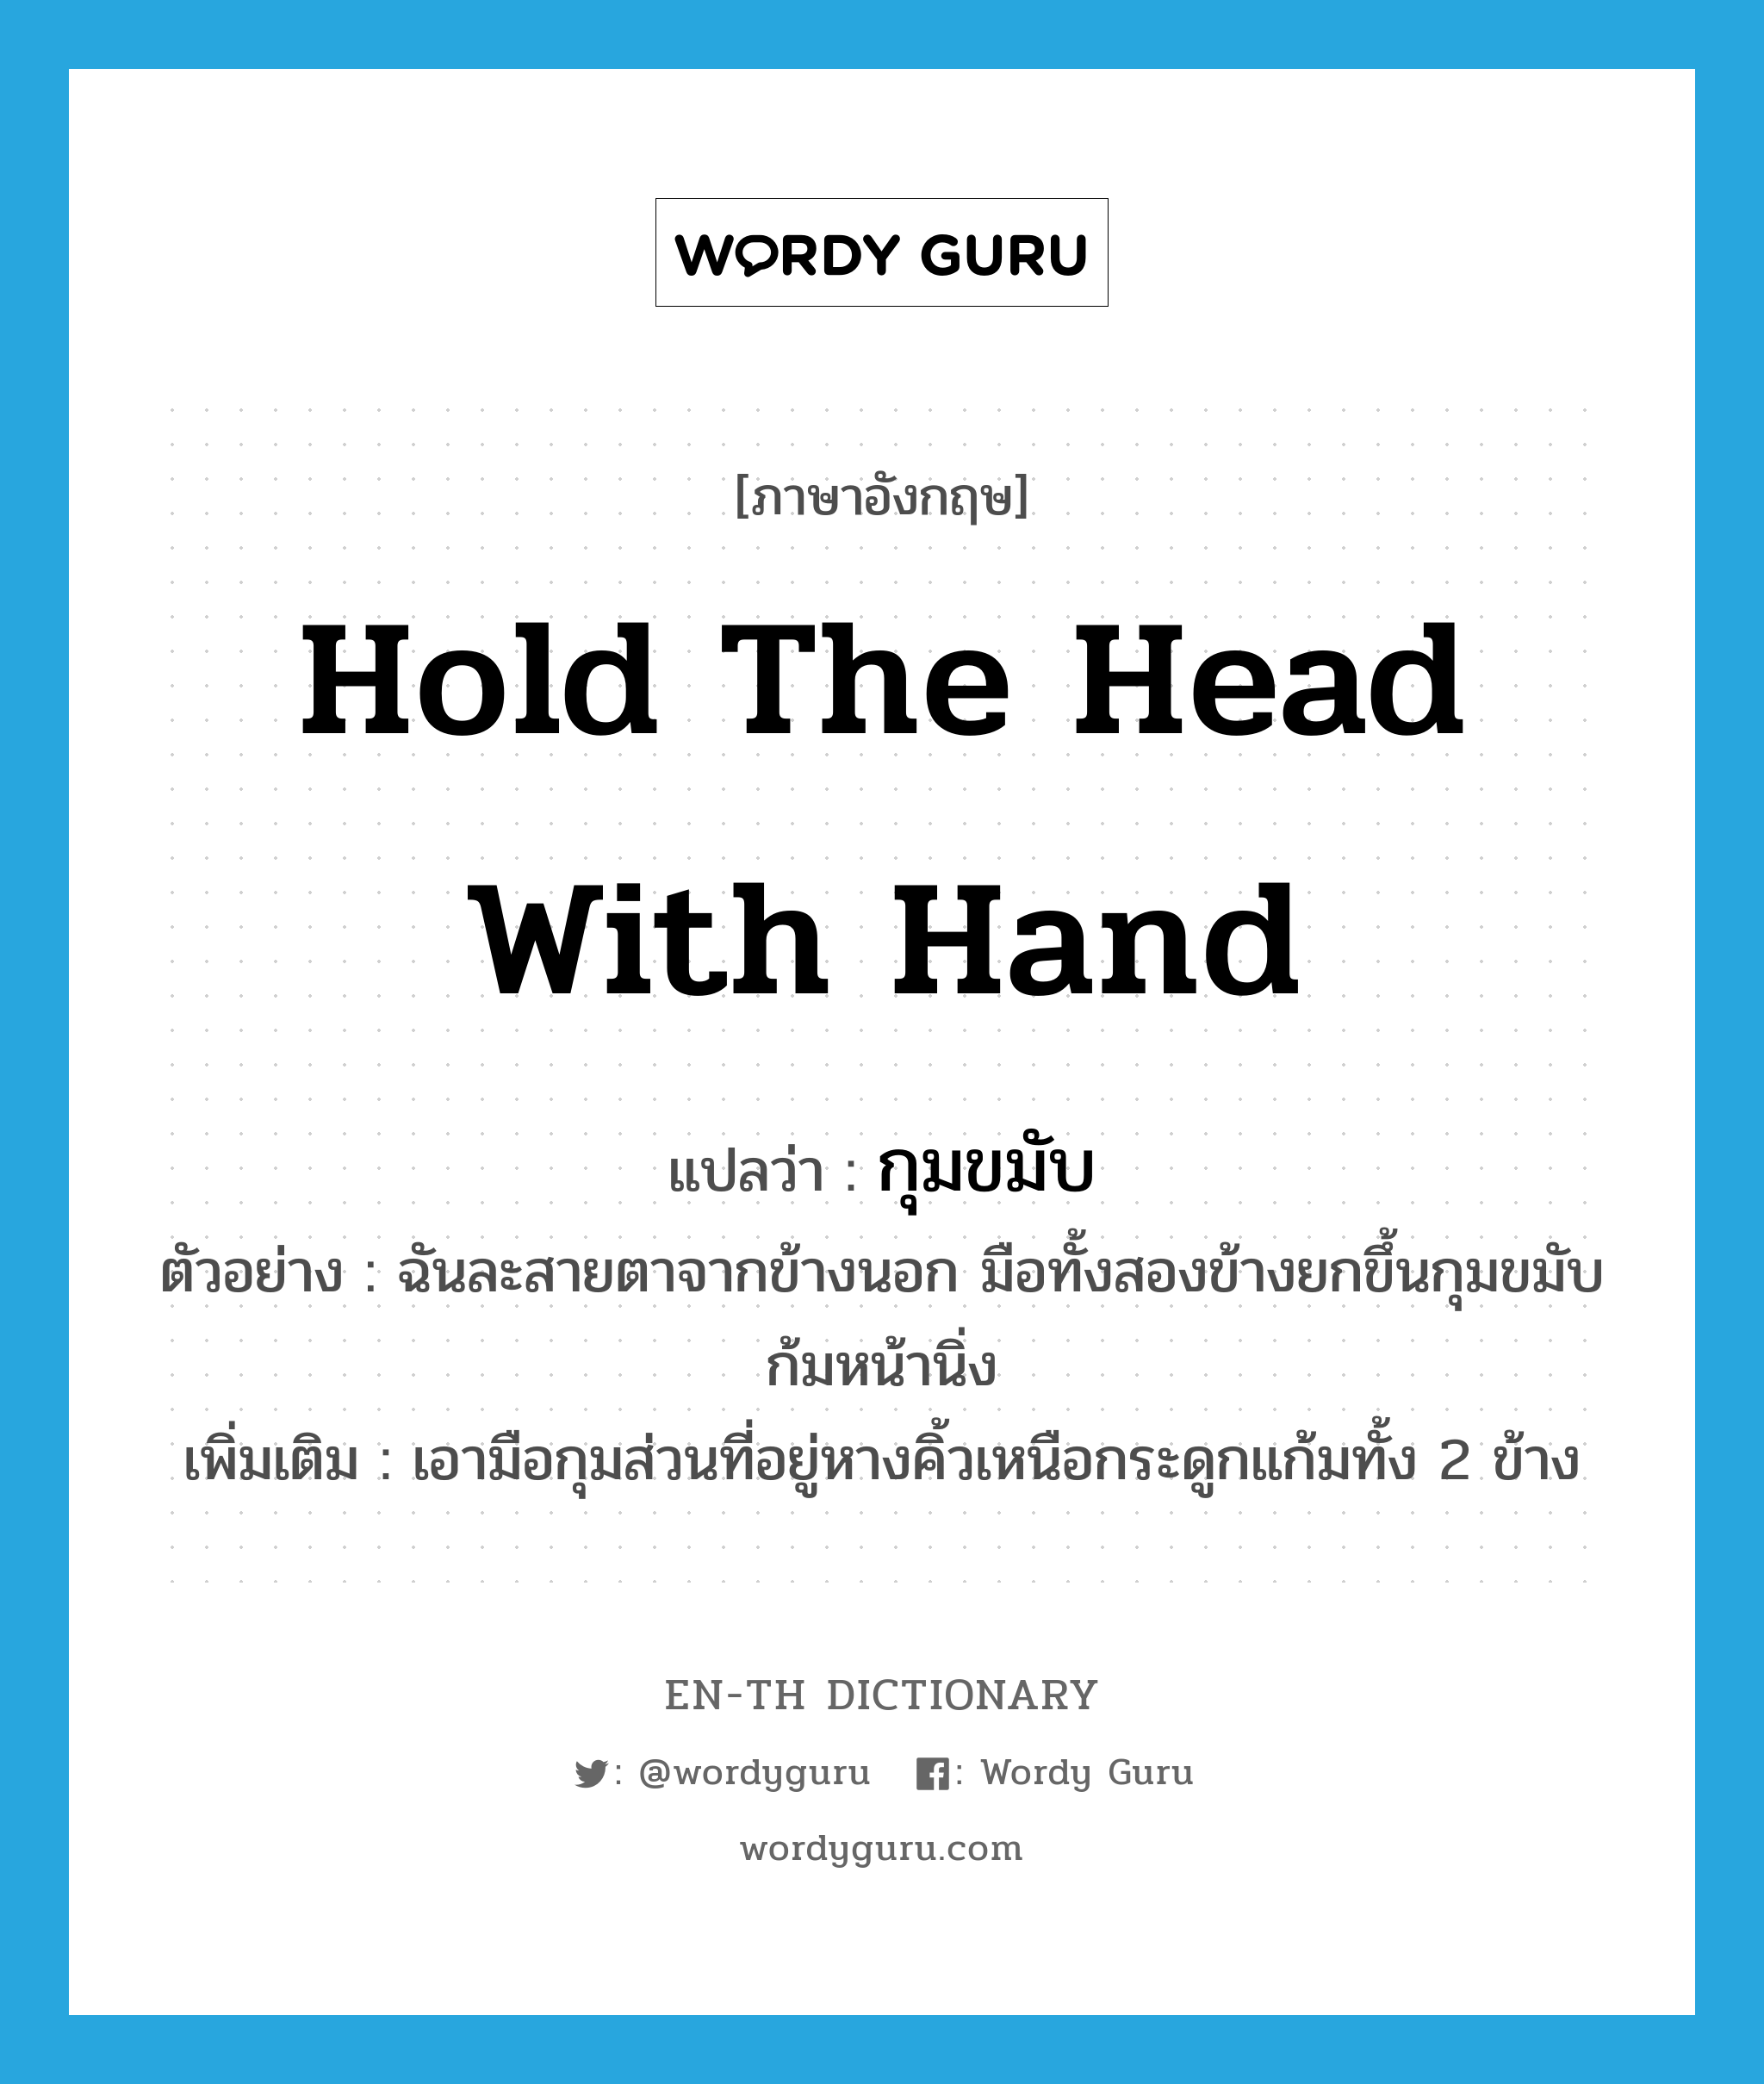 hold the head with hand แปลว่า?, คำศัพท์ภาษาอังกฤษ hold the head with hand แปลว่า กุมขมับ ประเภท V ตัวอย่าง ฉันละสายตาจากข้างนอก มือทั้งสองข้างยกขึ้นกุมขมับ ก้มหน้านิ่ง เพิ่มเติม เอามือกุมส่วนที่อยู่หางคิ้วเหนือกระดูกแก้มทั้ง 2 ข้าง หมวด V